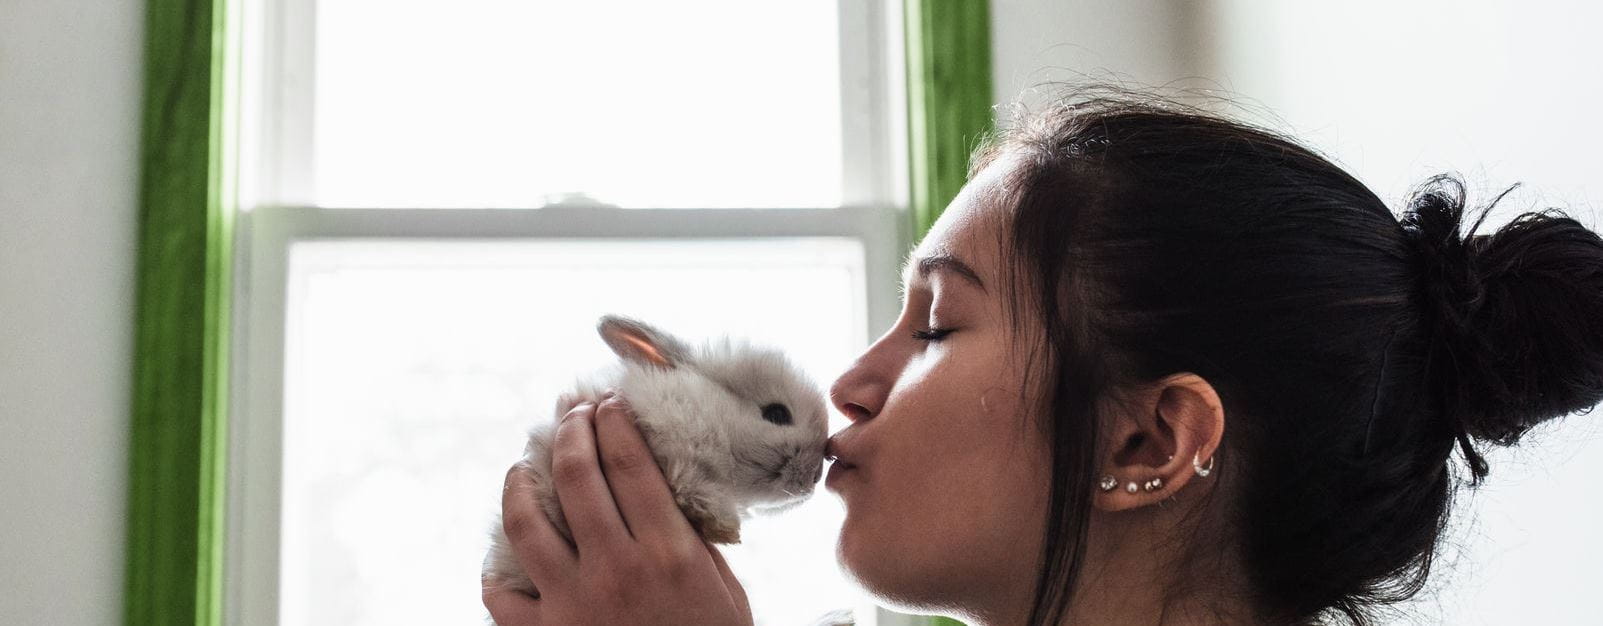 ГРИЖА КЪМ ЖИВОТНИТЕ, тестове върху животни, сладко малко зайче